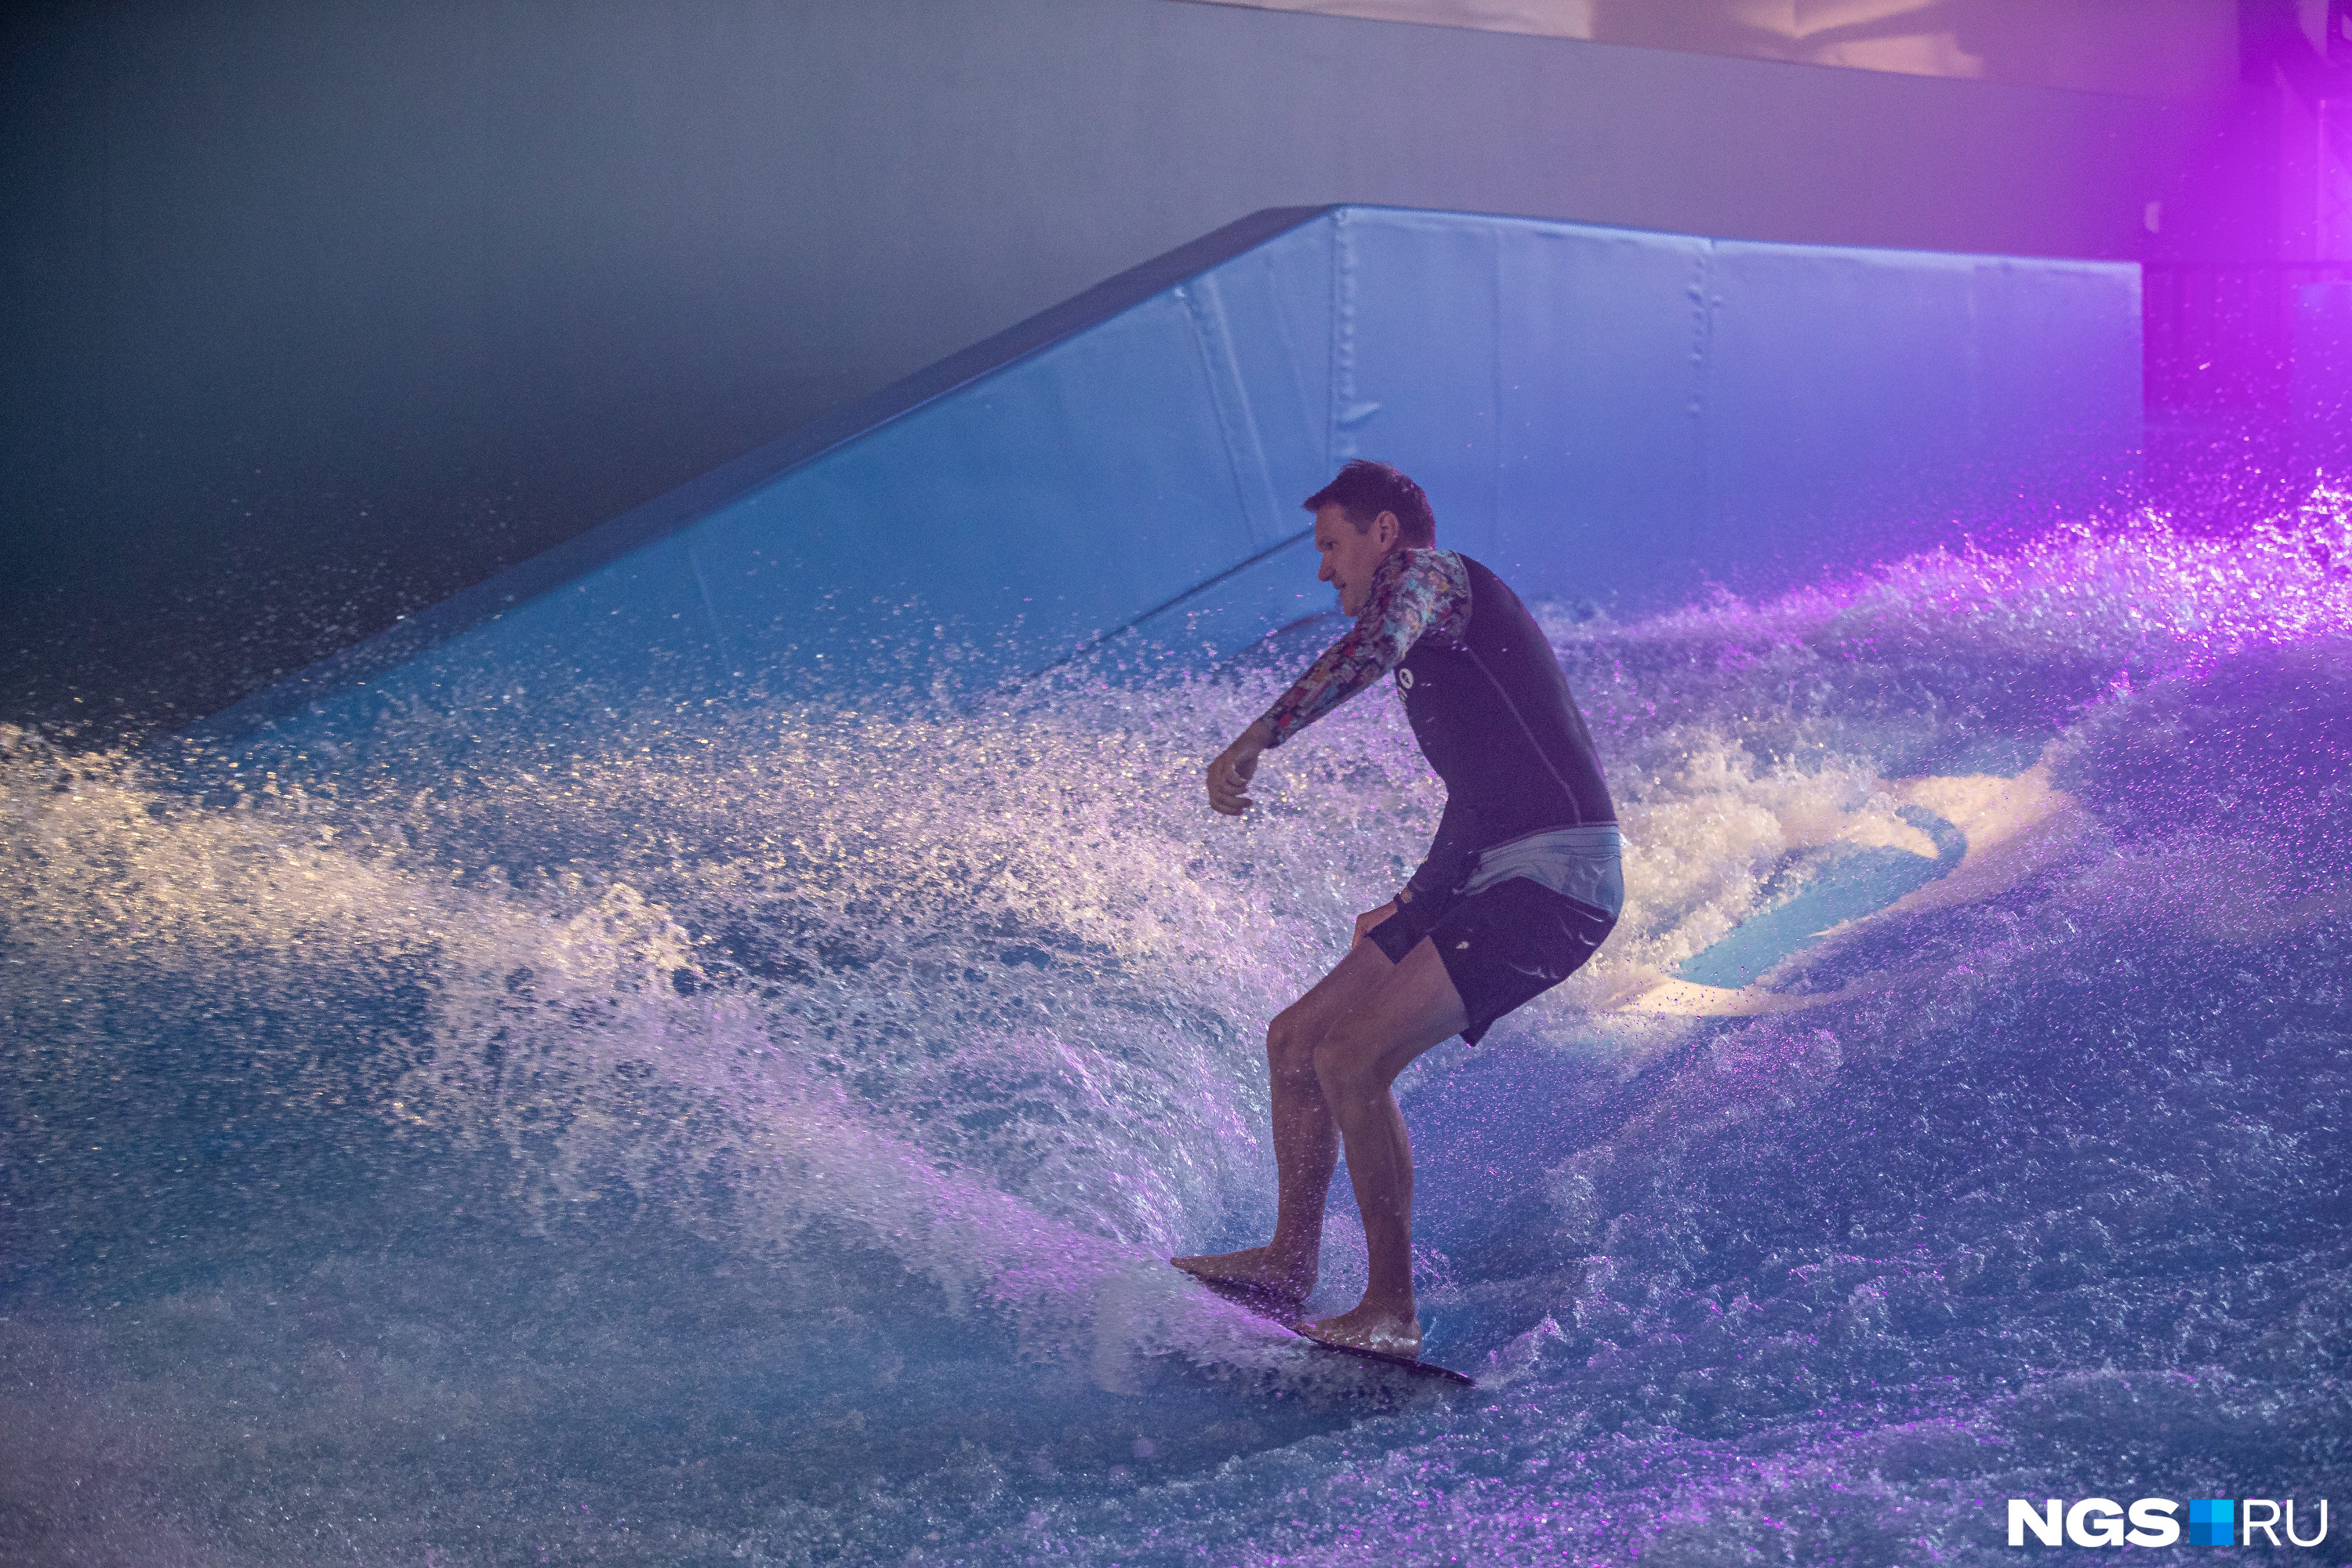 Искусственная волна — установка для серфинга, позволяющая испытать ощущения, аналогичные катанию на доске в открытом море